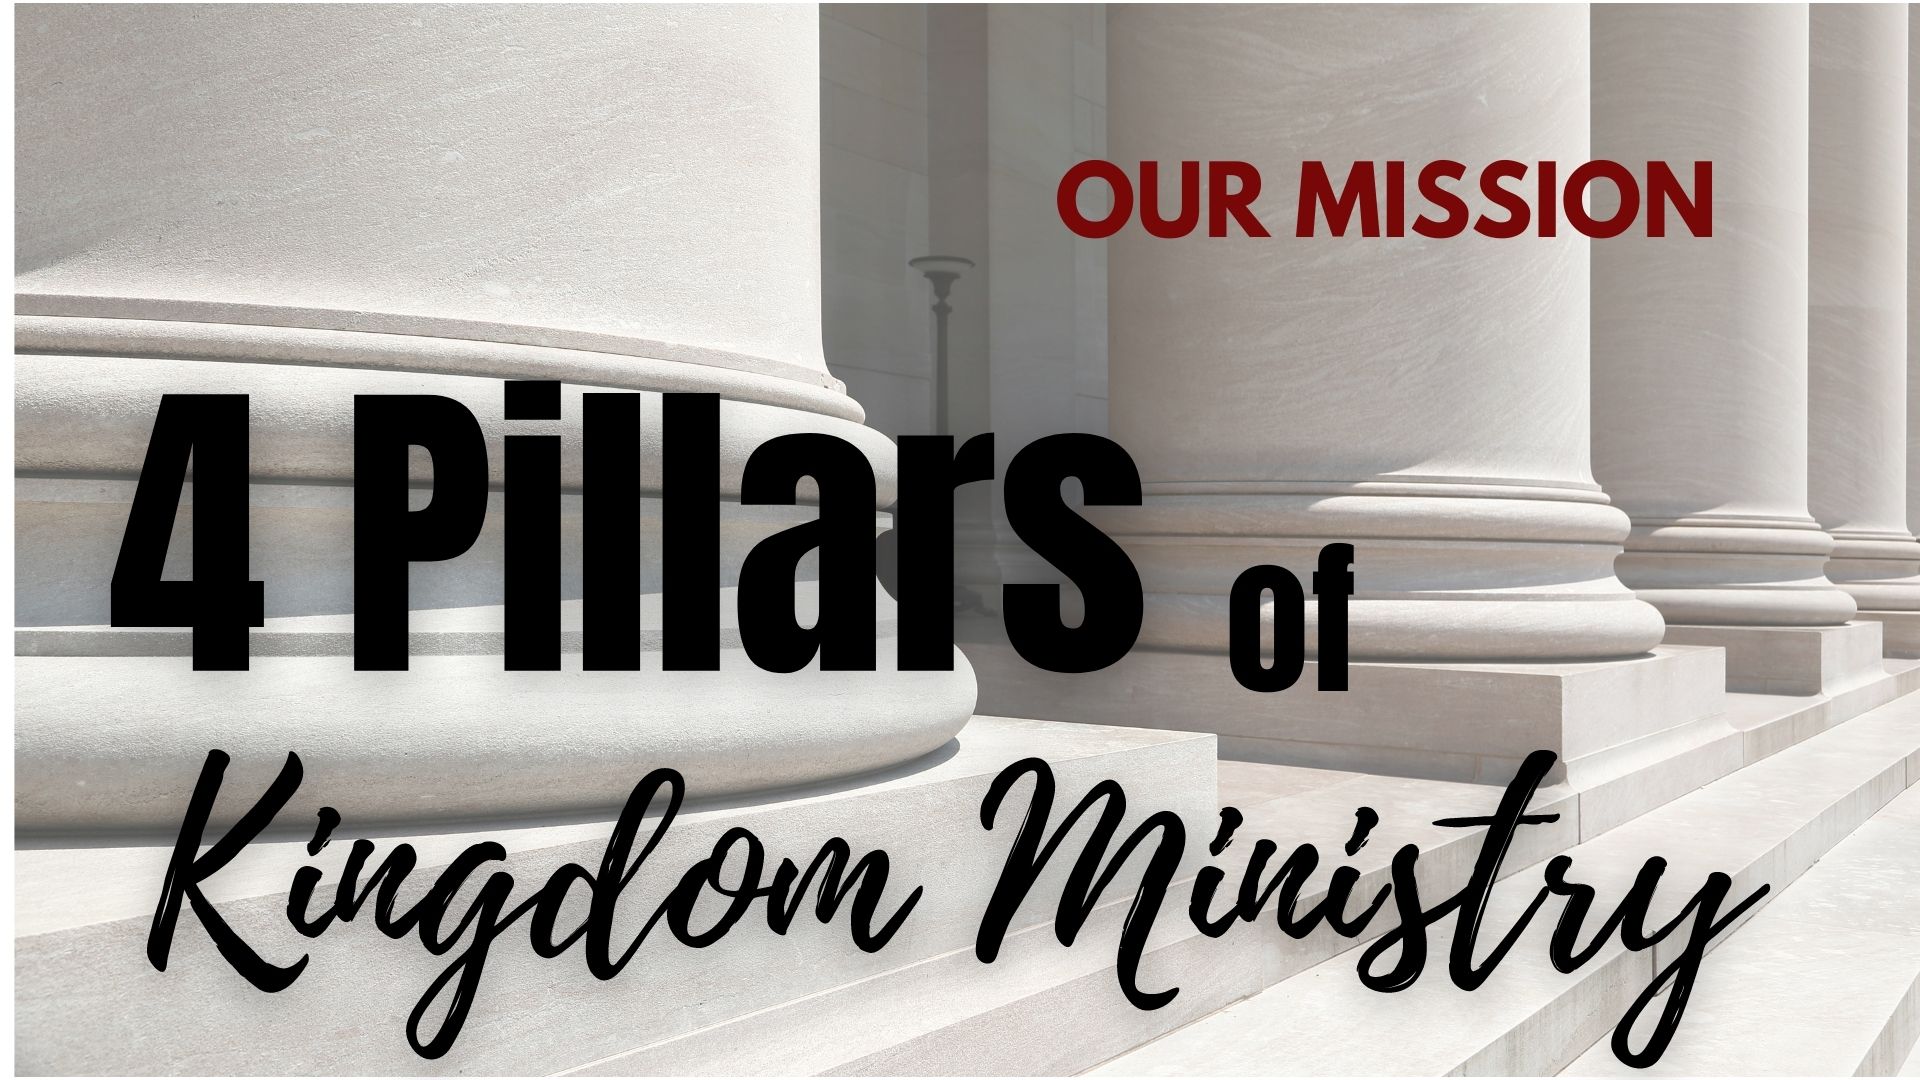 4 Pillars of Kingdom Ministry